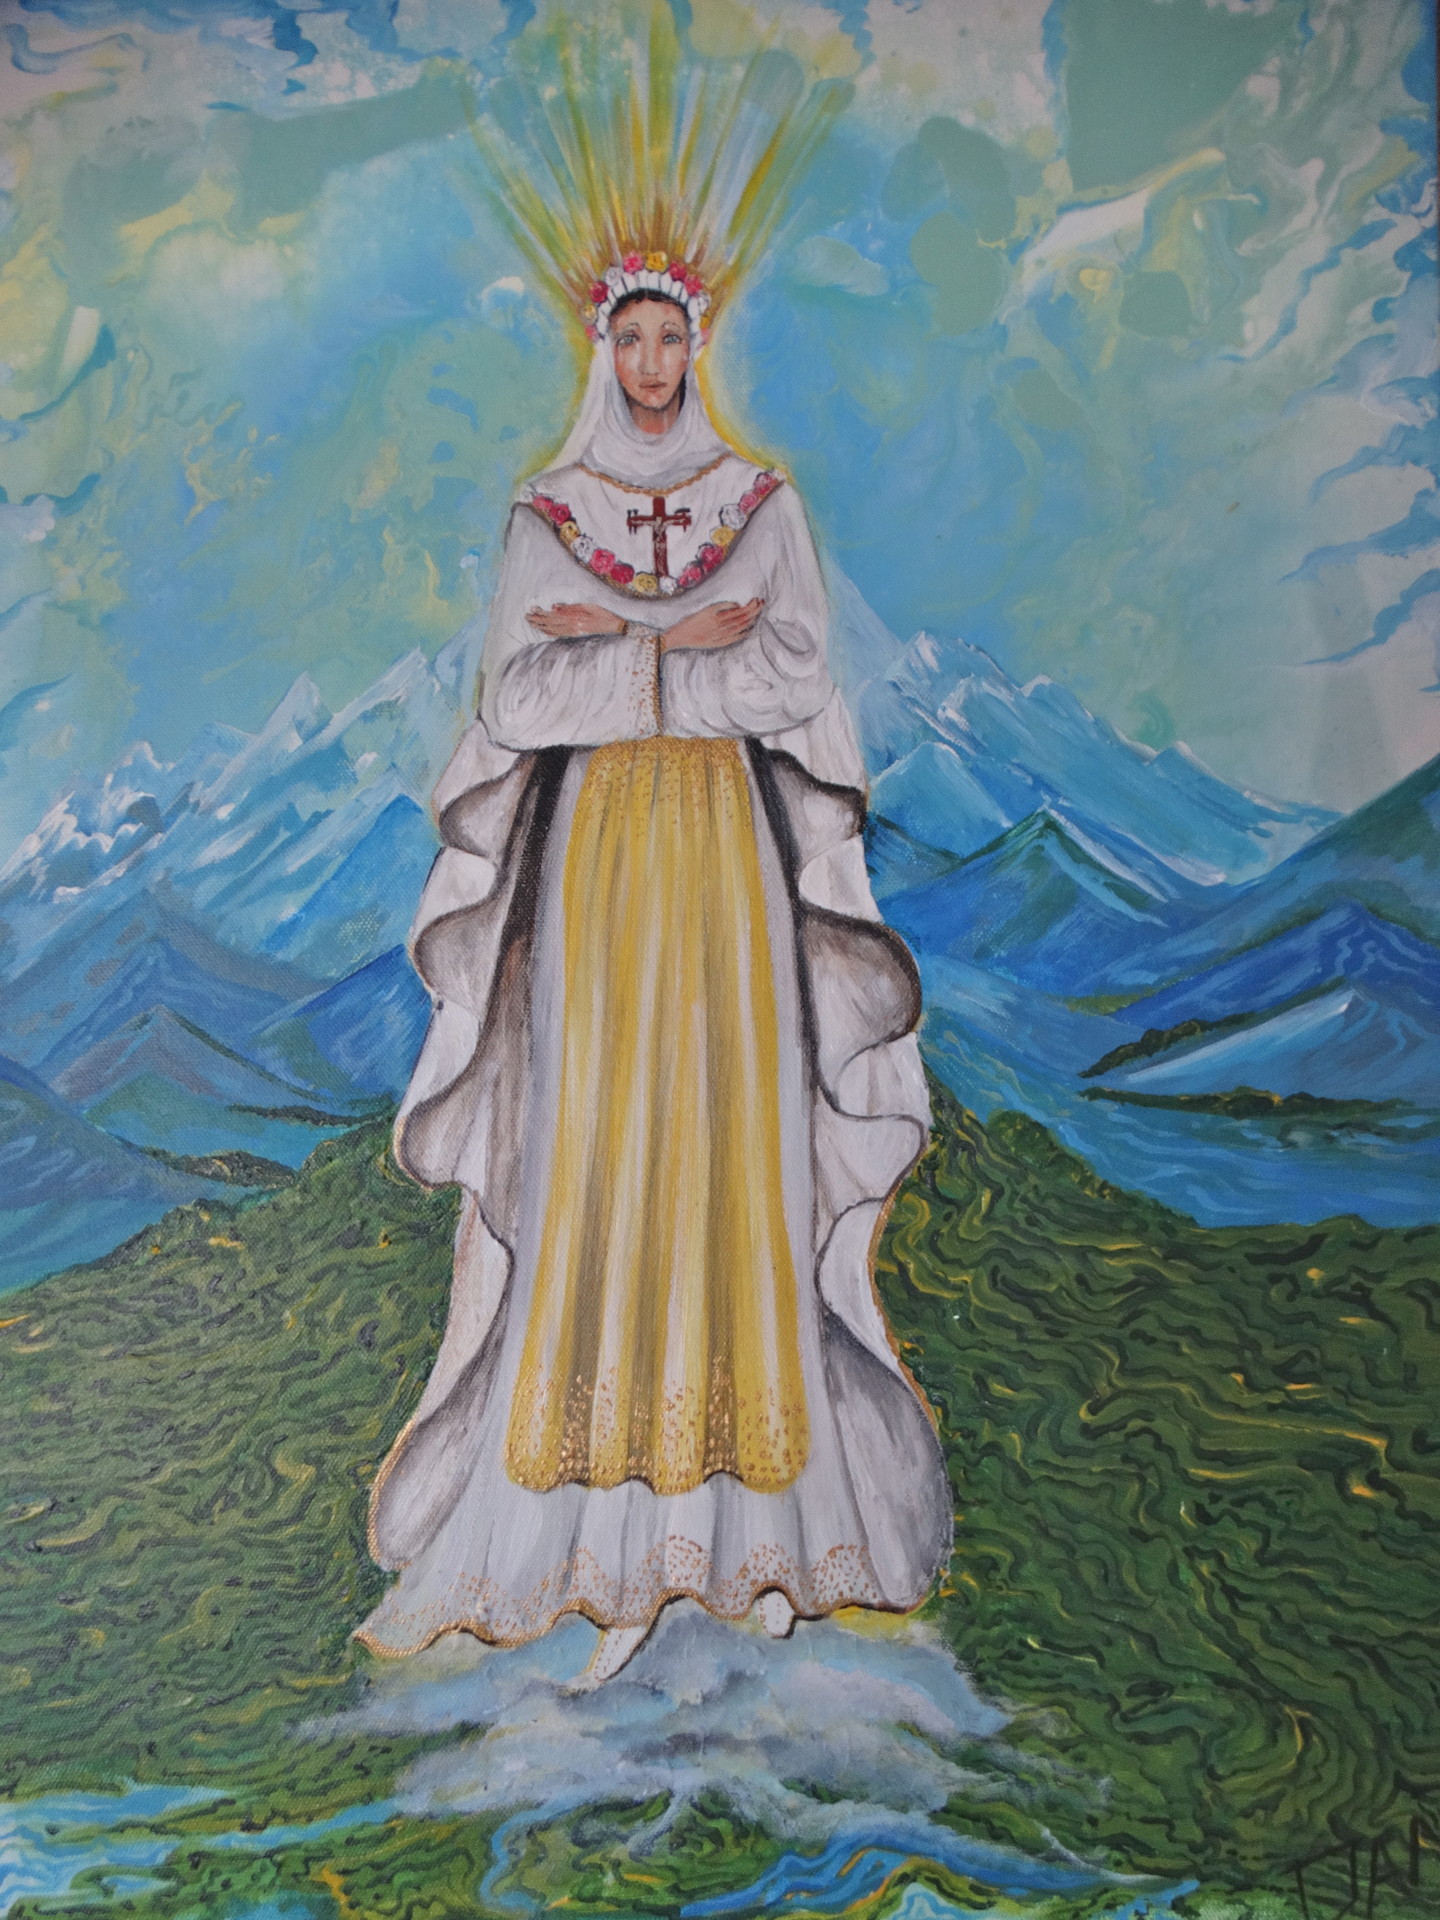 La Virgen E La Salette, Painting by David Alvarado Mora | Artmajeur